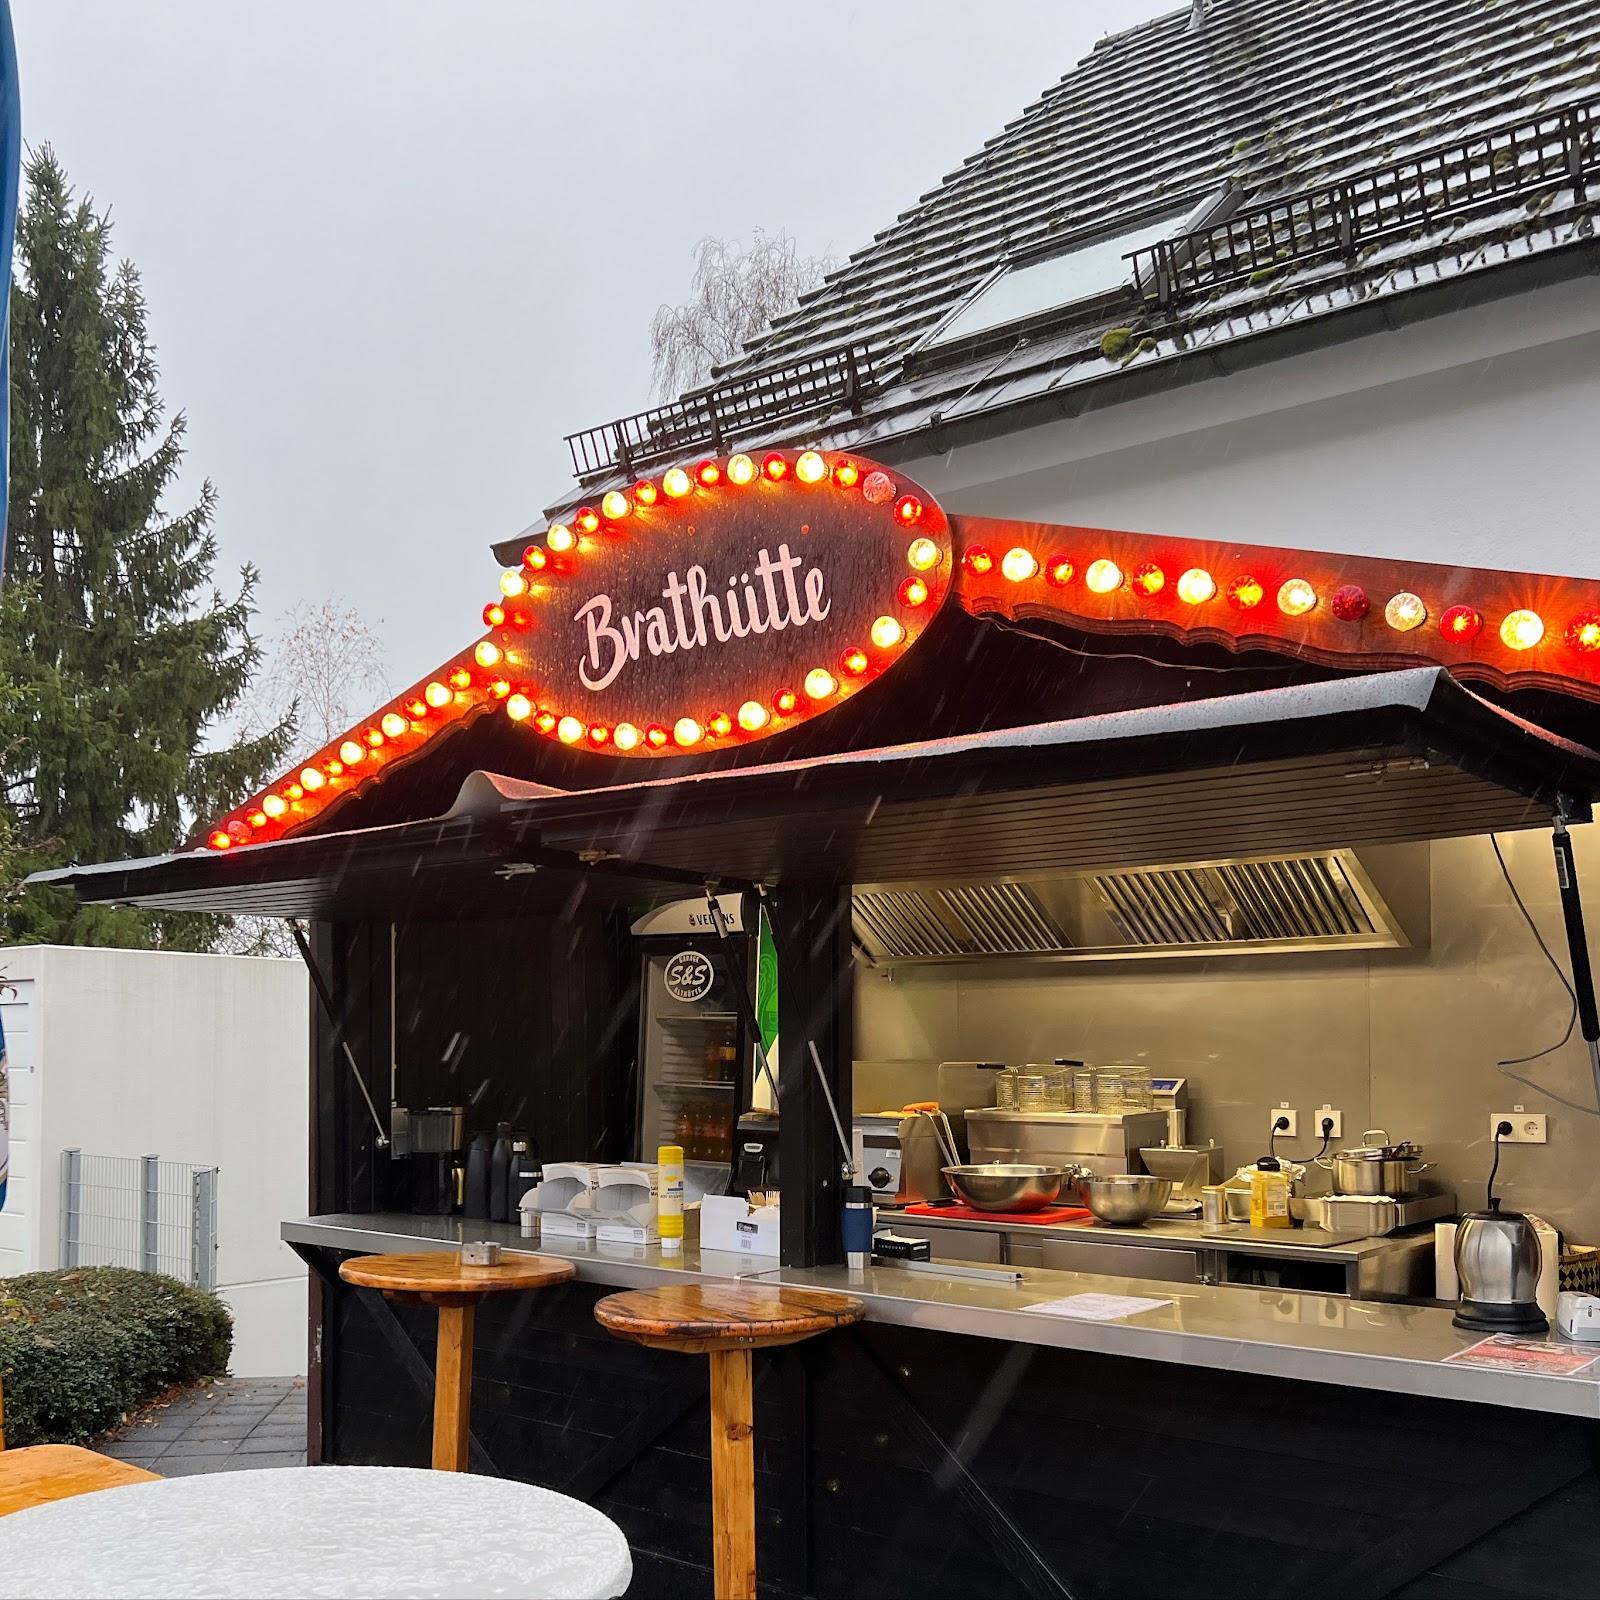 Restaurant "Brathütte" in Althütte